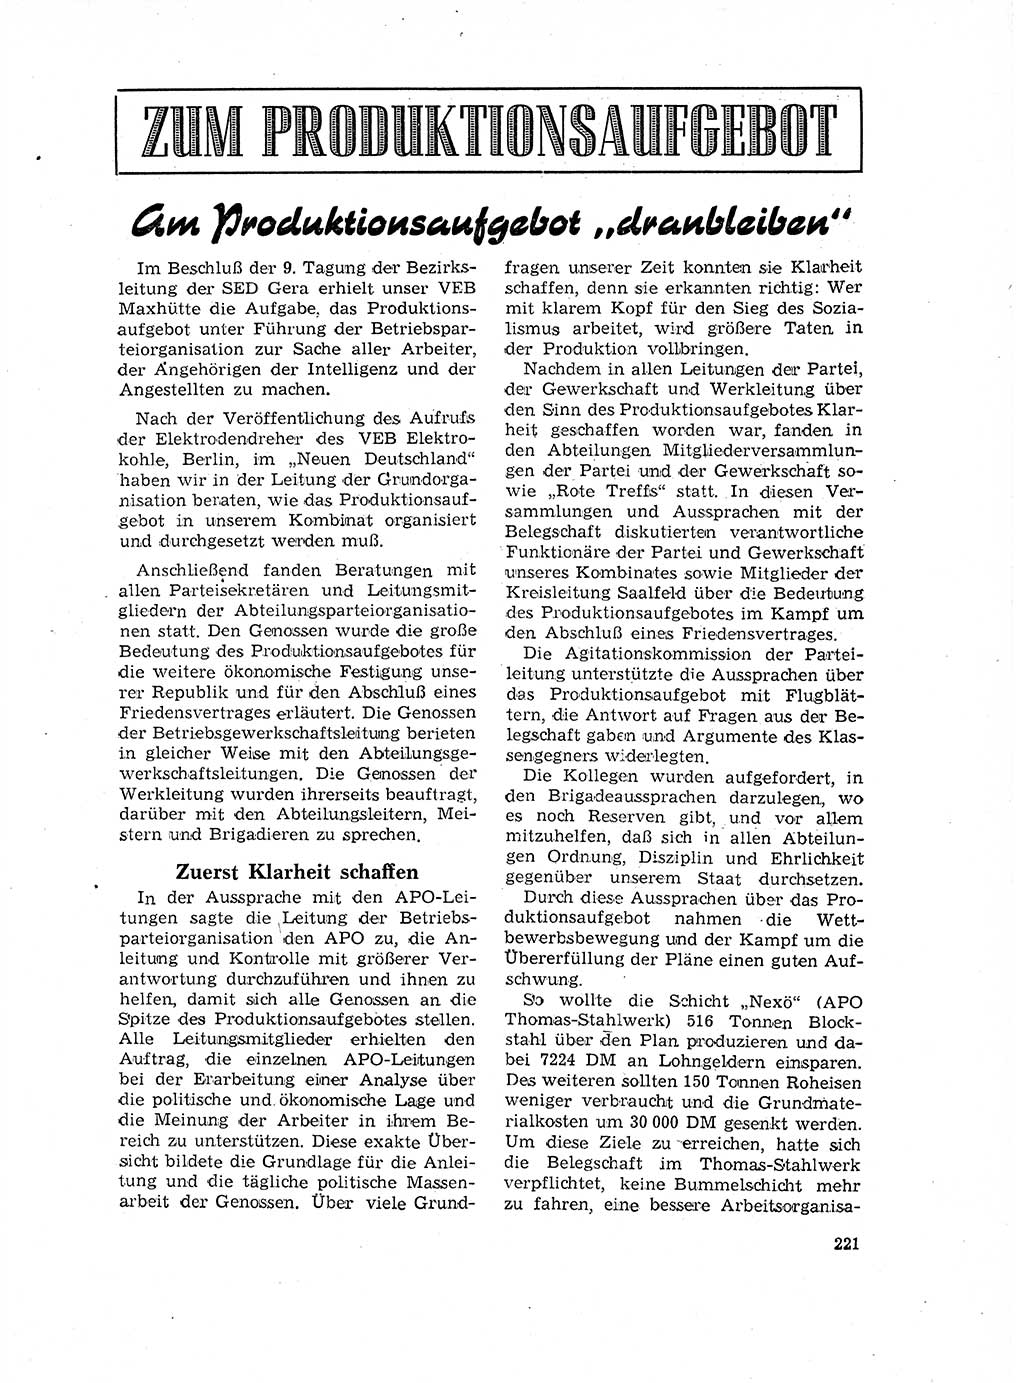 Neuer Weg (NW), Organ des Zentralkomitees (ZK) der SED (Sozialistische Einheitspartei Deutschlands) für Fragen des Parteilebens, 17. Jahrgang [Deutsche Demokratische Republik (DDR)] 1962, Seite 221 (NW ZK SED DDR 1962, S. 221)